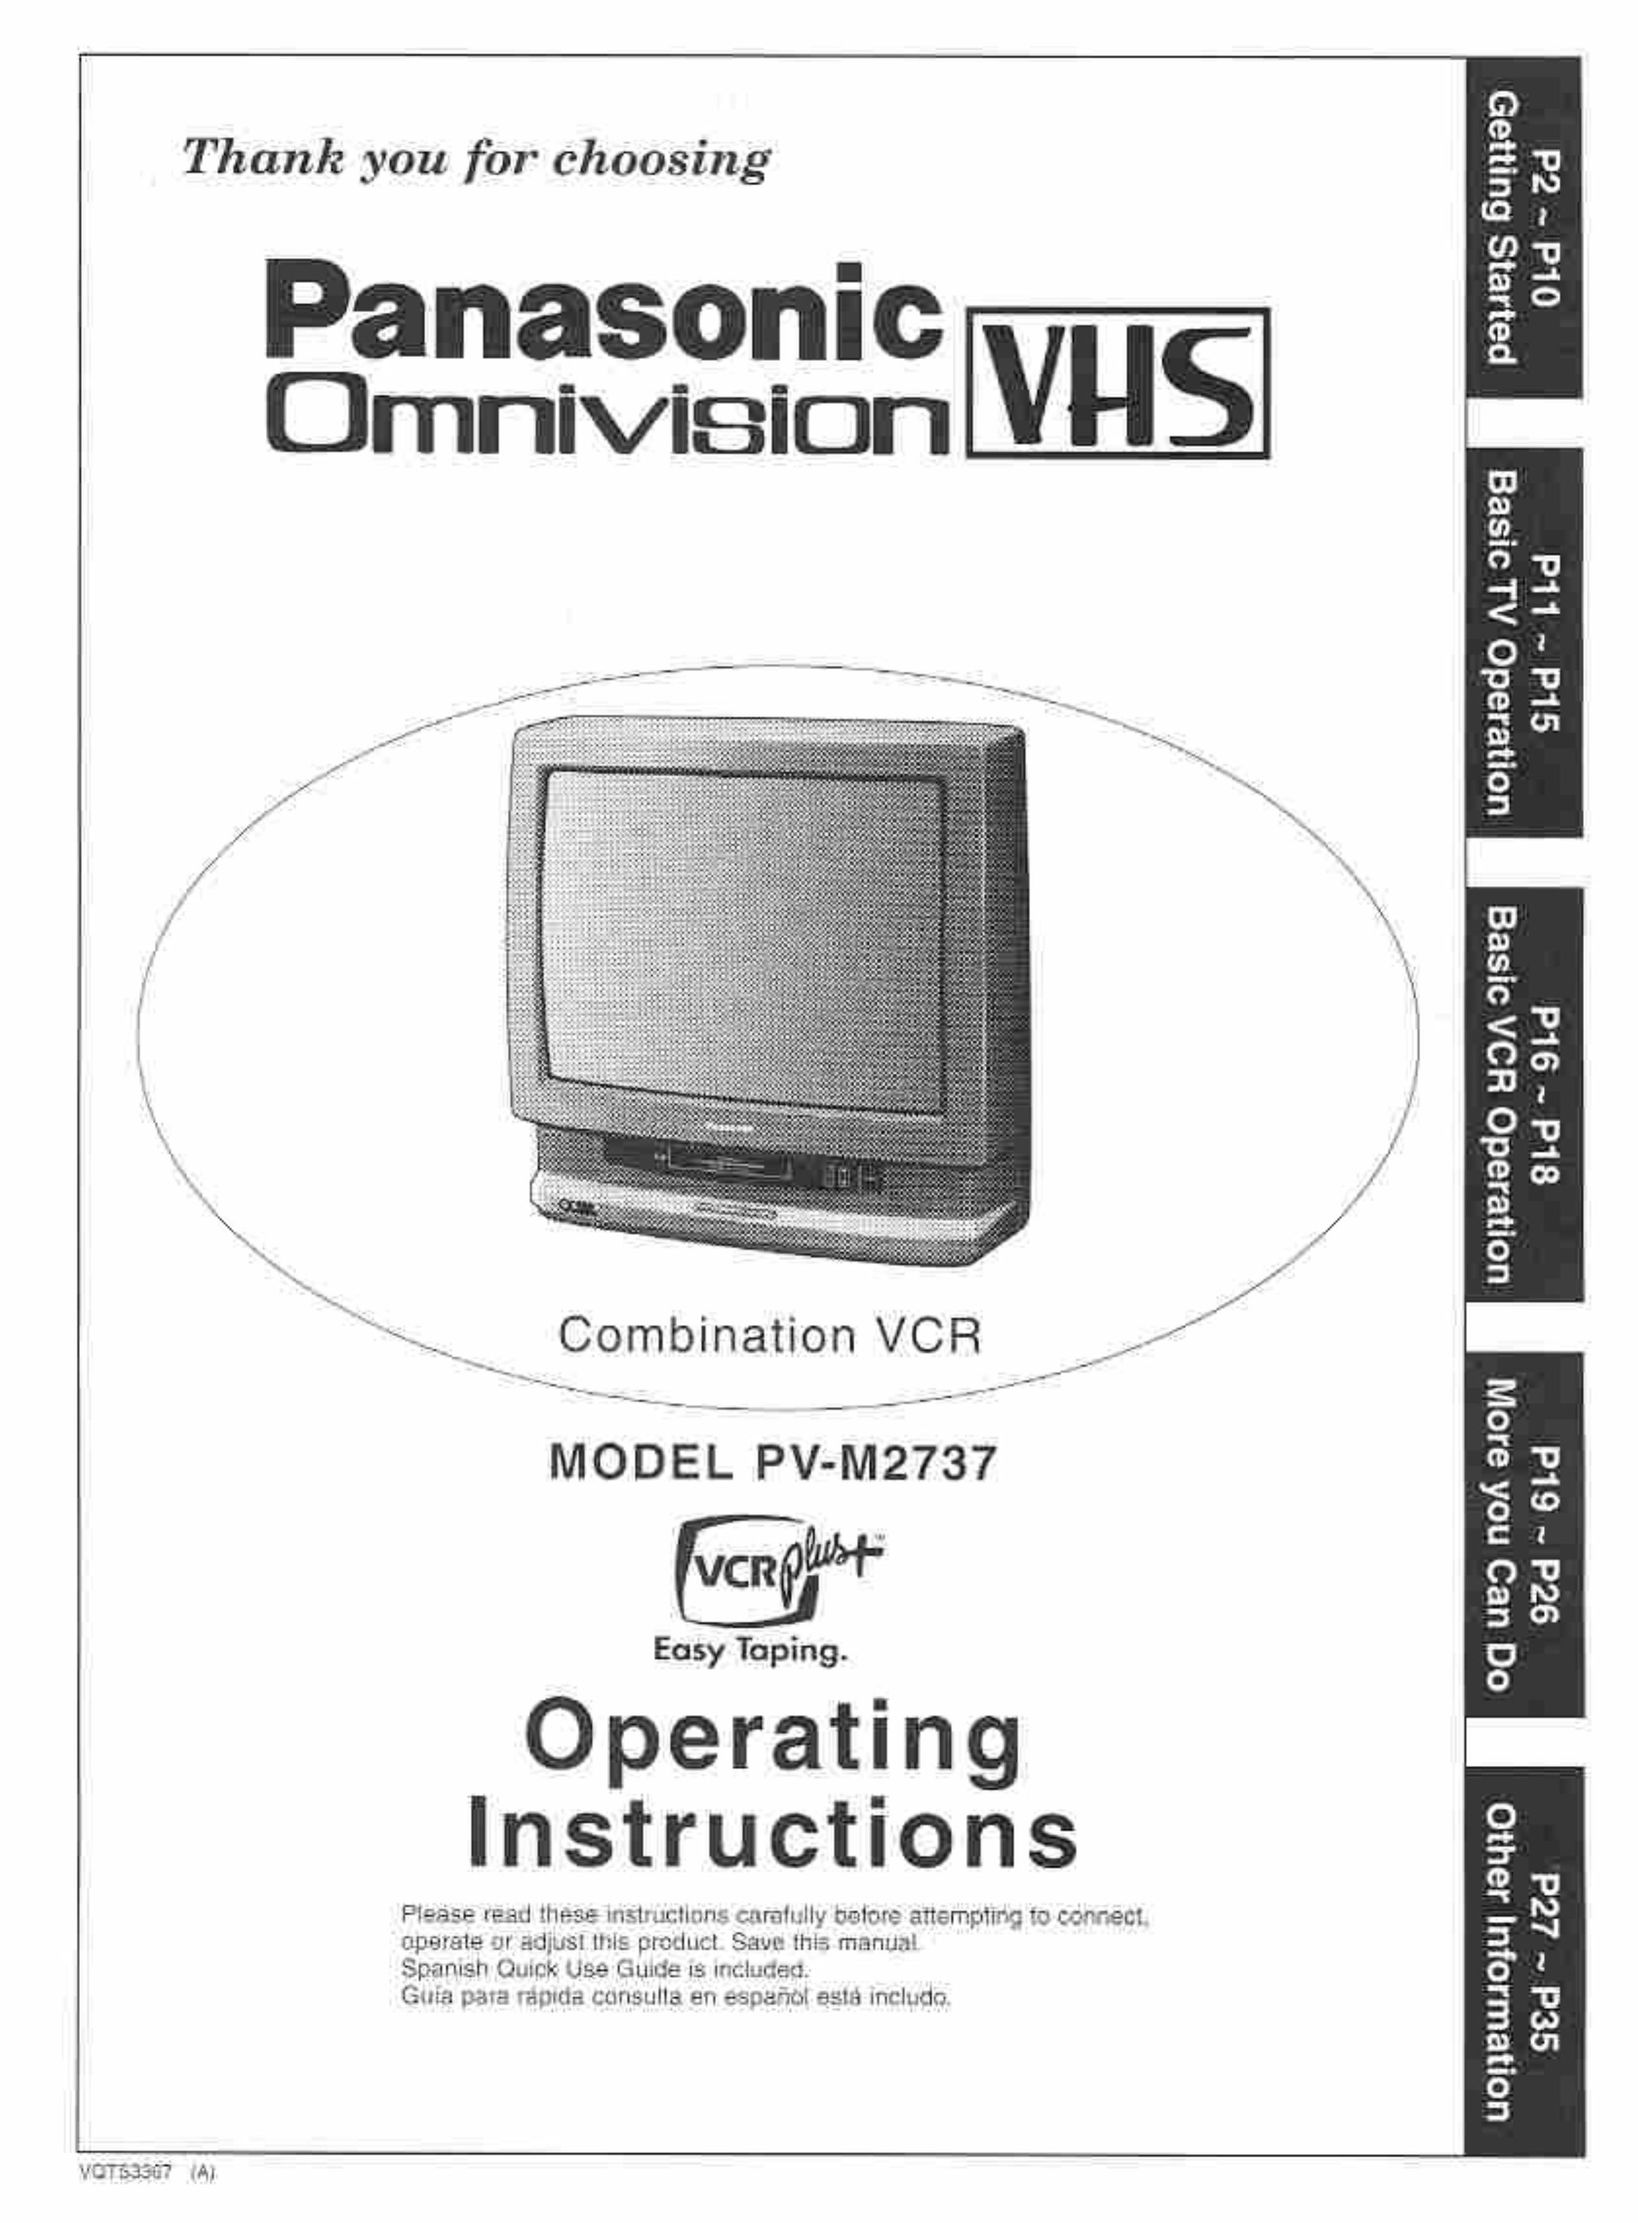 Panasonic PV-M2737 TV VCR Combo User Manual